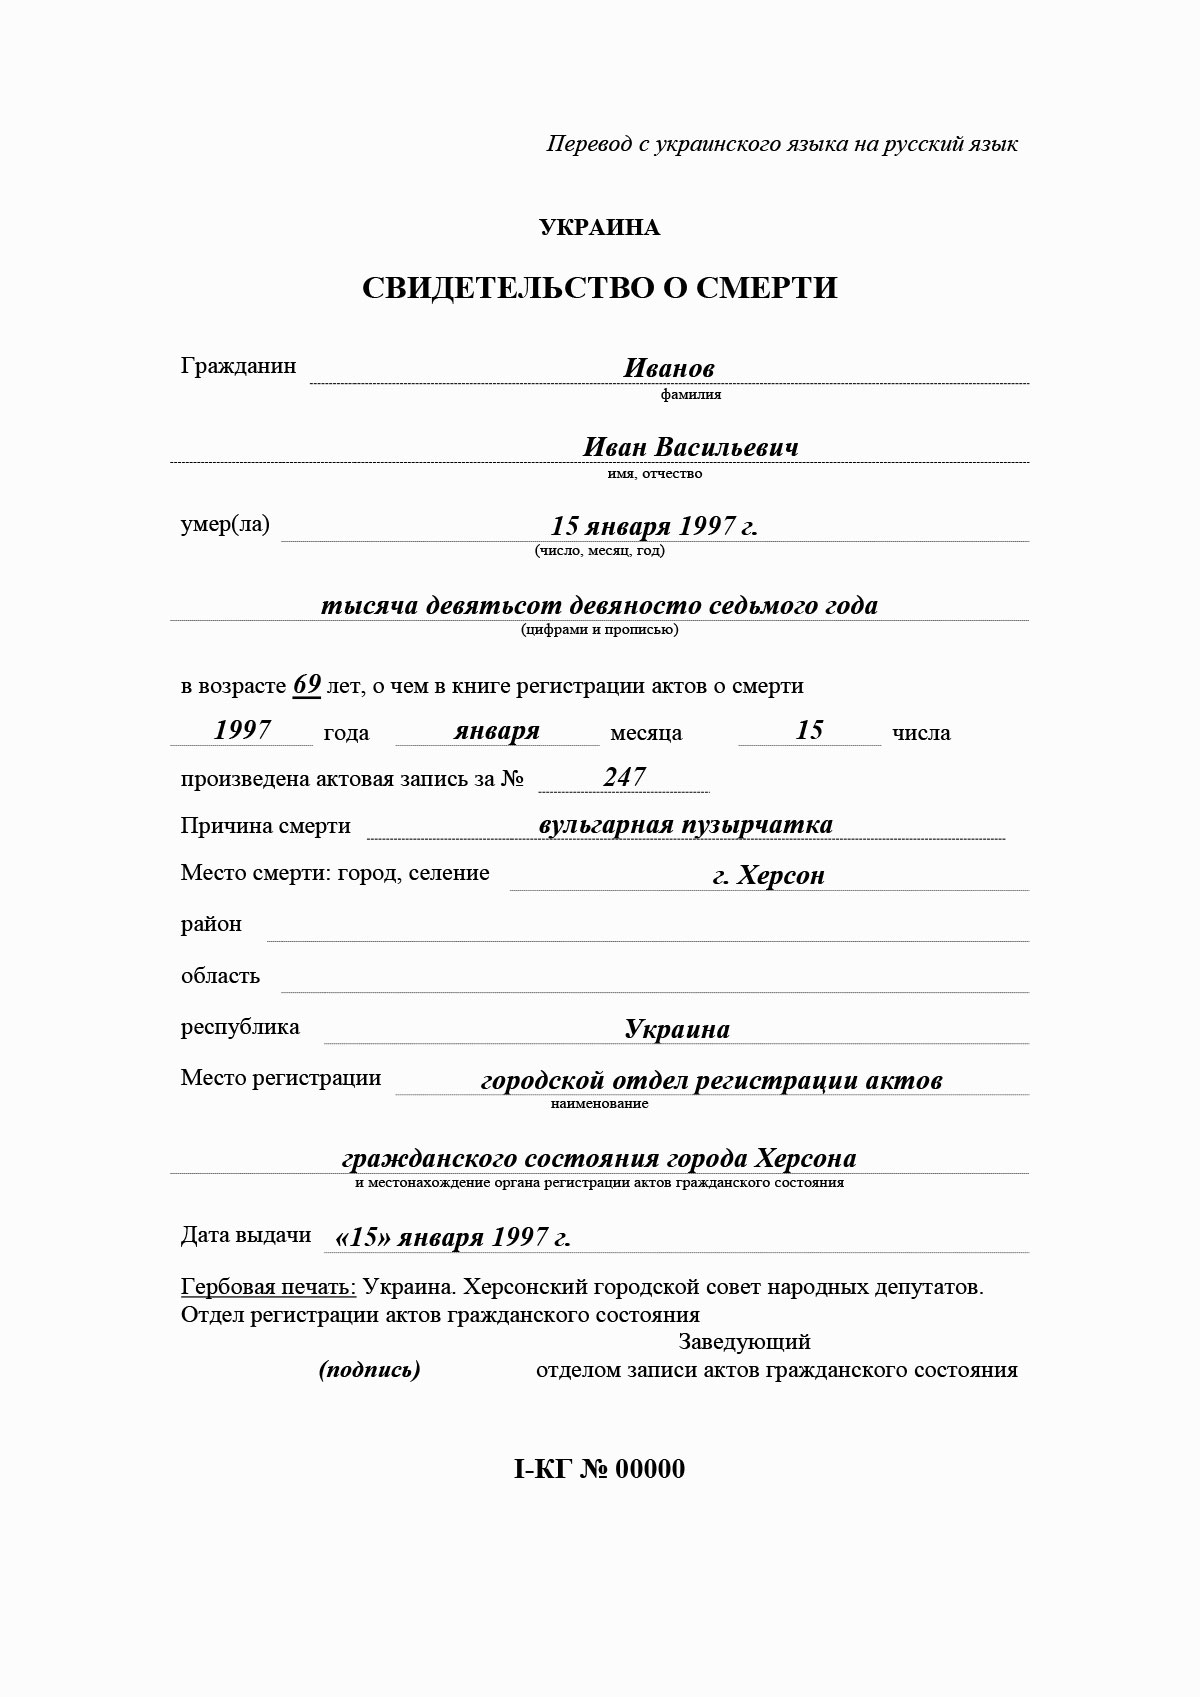 Пример перевода свидетельства о смерти с украинского языка